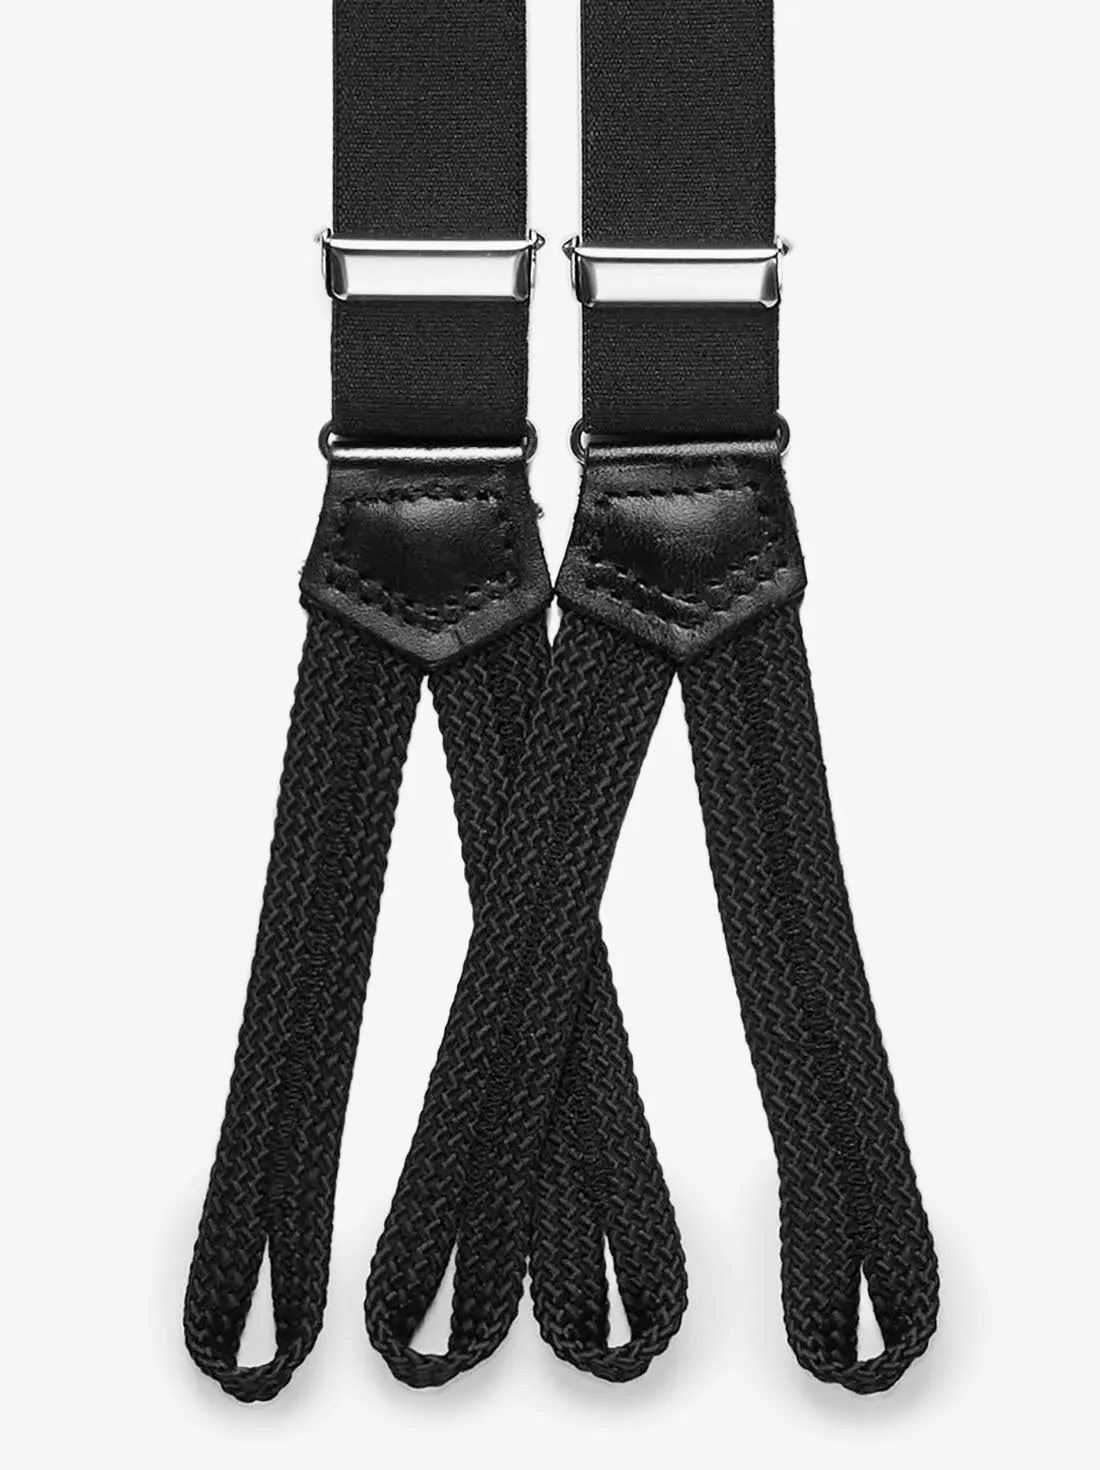 Black Suspenders Formal